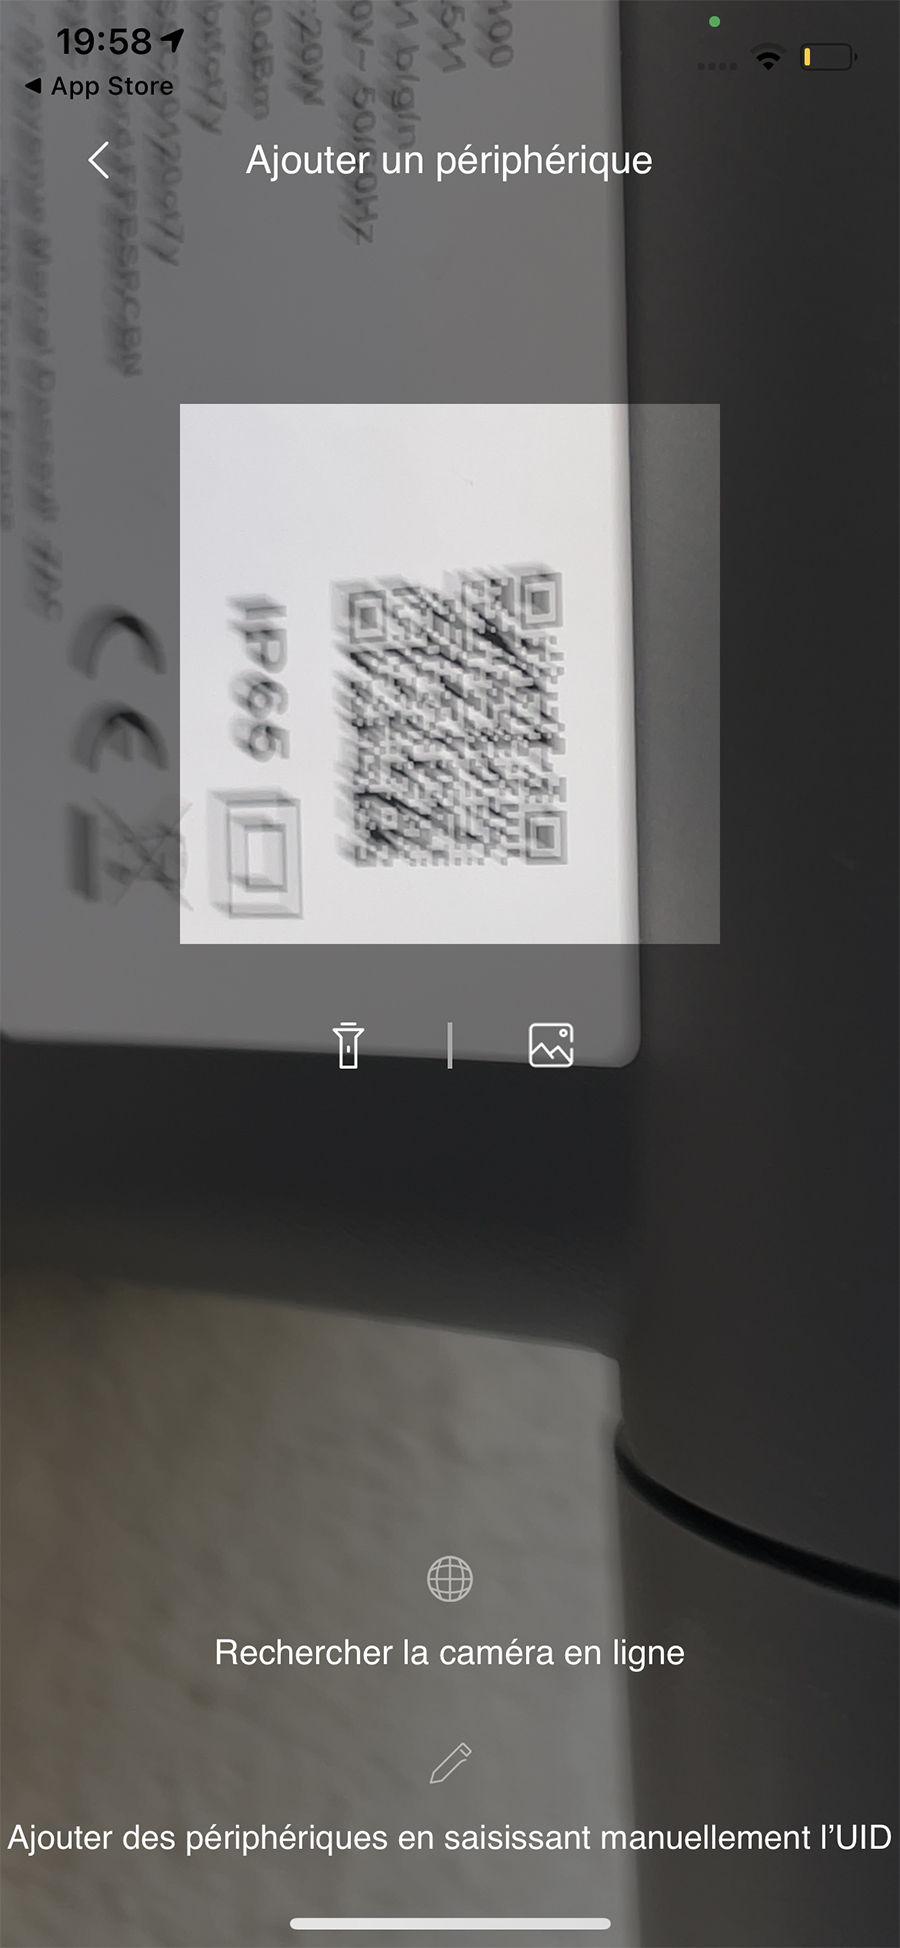 Le QR Code sur le côté de la caméra sert à l’identification par l’app // Source : Frandroid - Yazid Amer